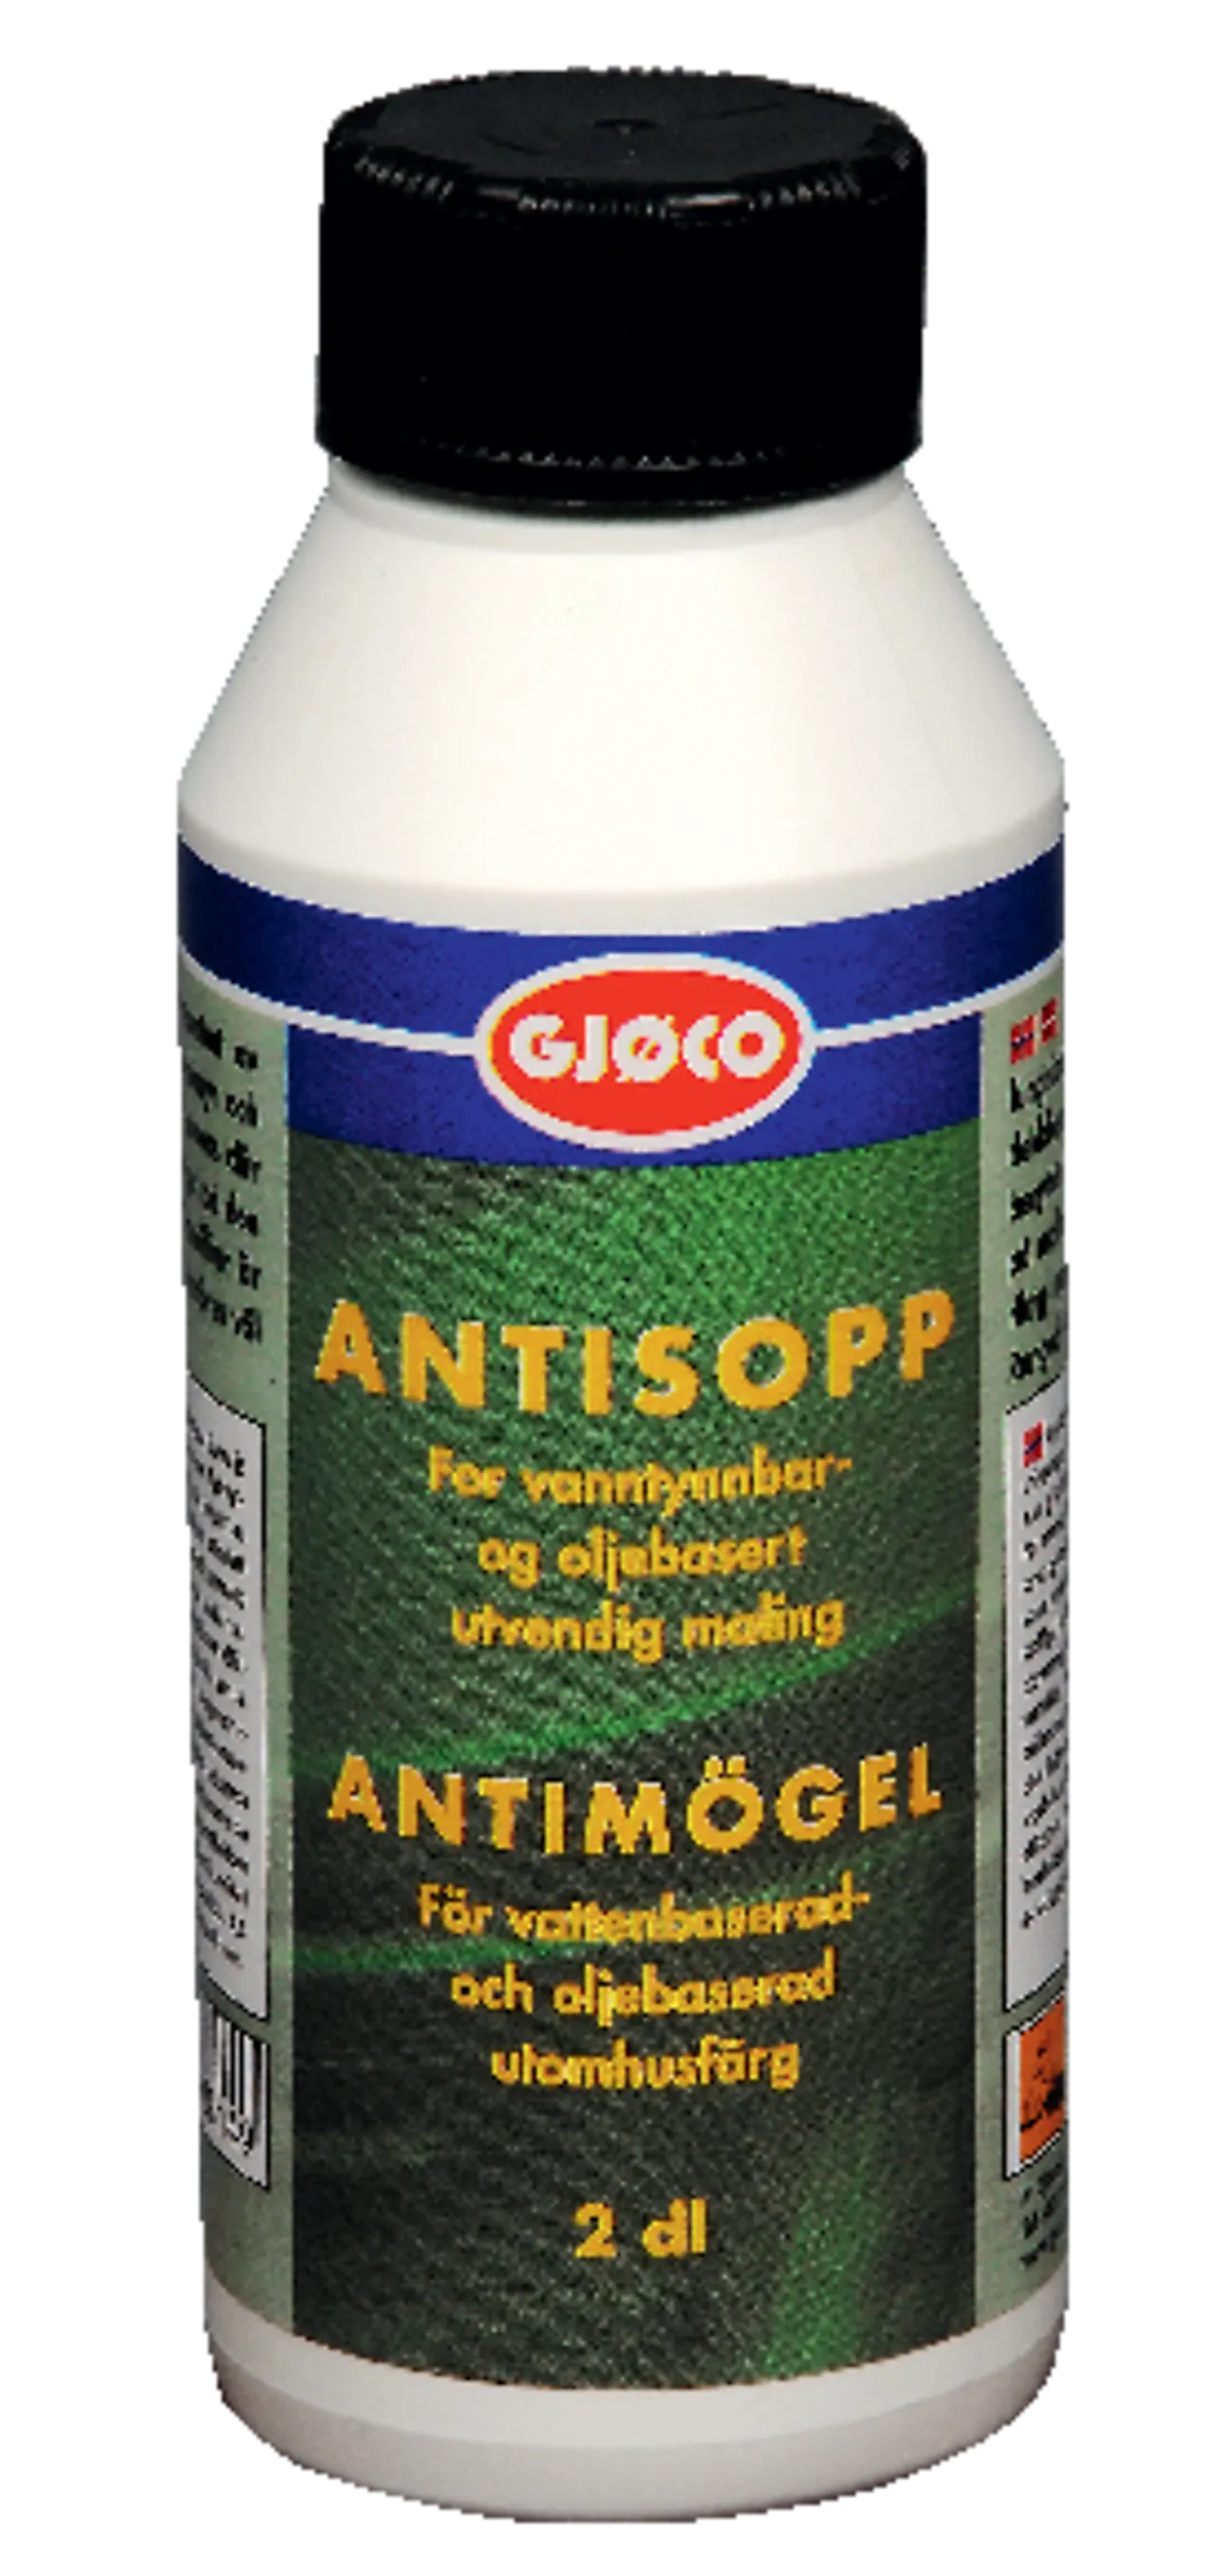 Soppmiddel antisopp 0,2 dl gjøco